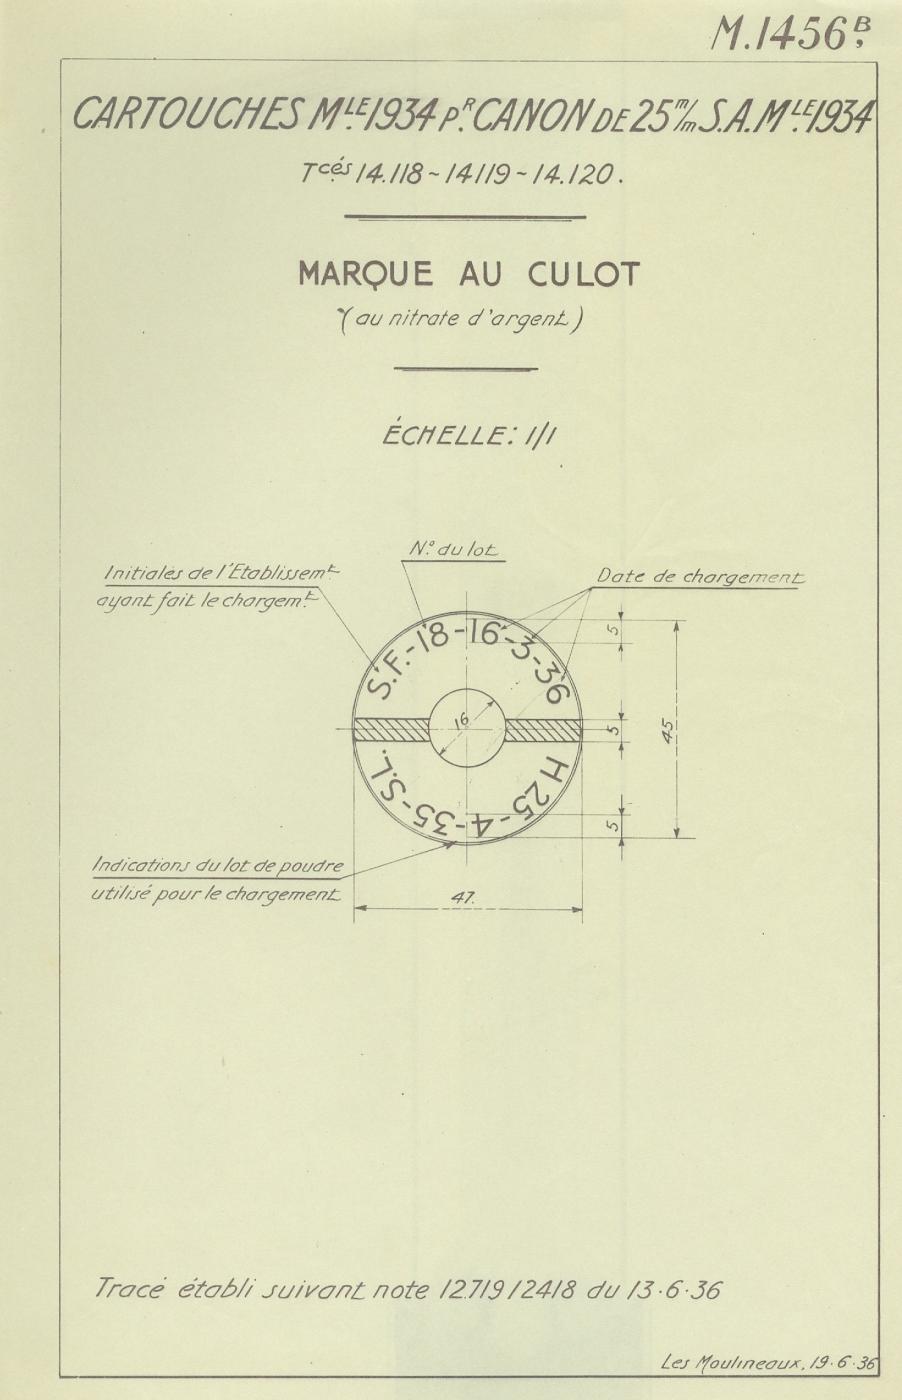 Ligne Maginot - Marquage du culot au nitrate d’argent – Tracé n° M1456B - 